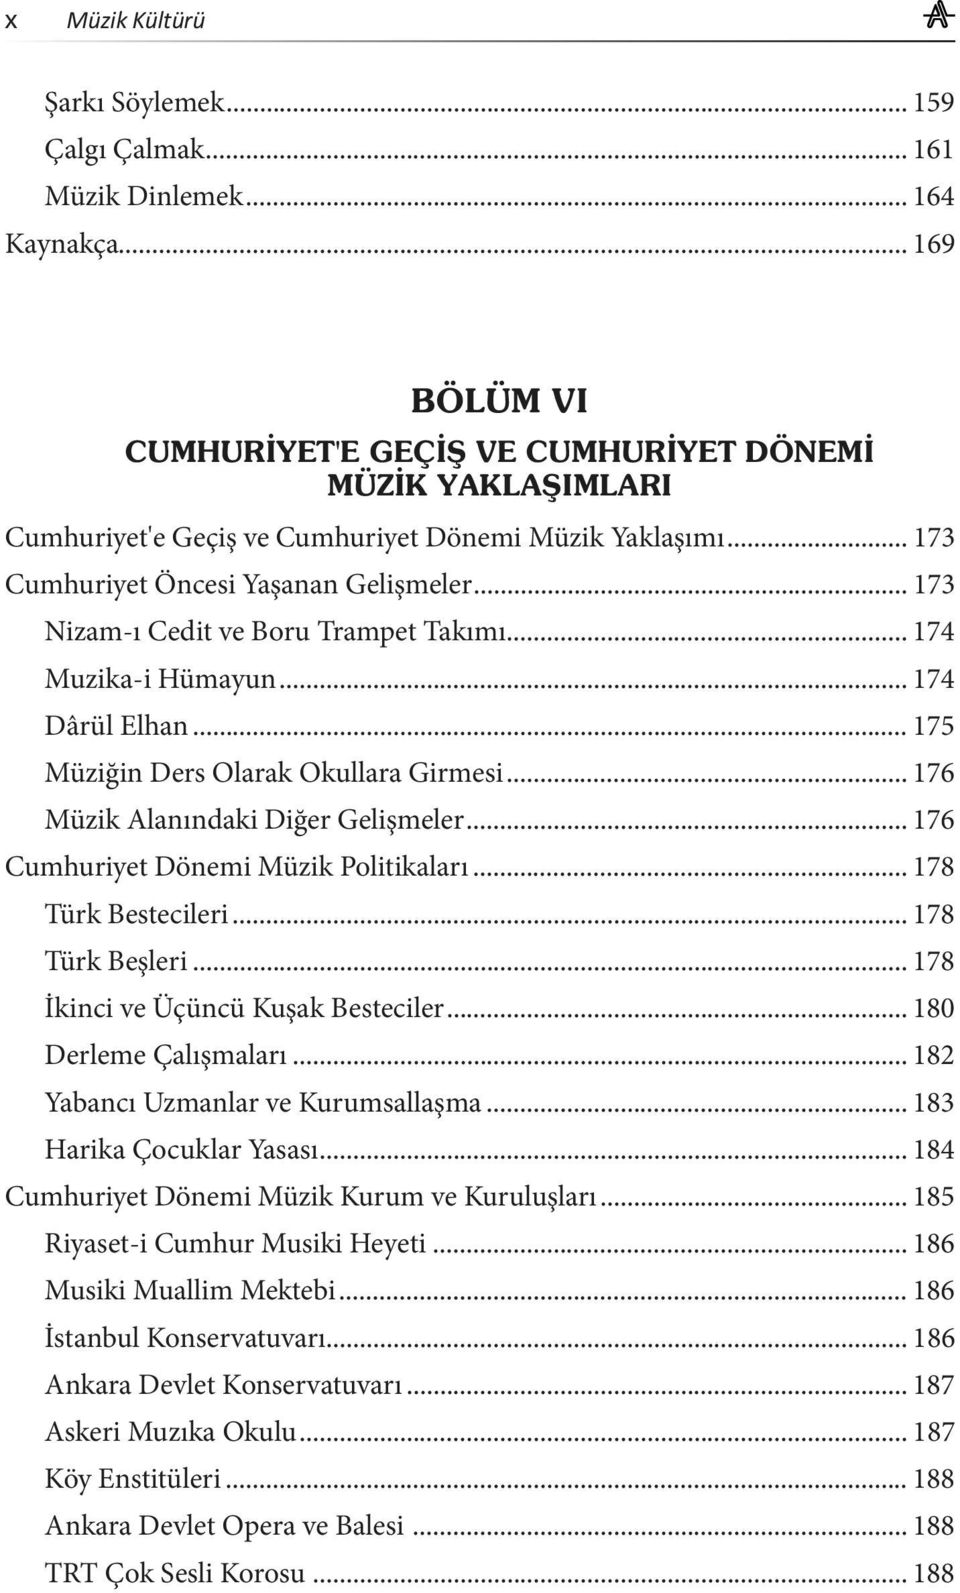 .. 176 Cumhuriyet Dönemi Müzik Politikaları... 178 Türk Bestecileri... 178 Türk Beşleri... 178 İkinci ve Üçüncü Kuşak Besteciler... 180 Derleme Çalışmaları... 182 Yabancı Uzmanlar ve Kurumsallaşma.